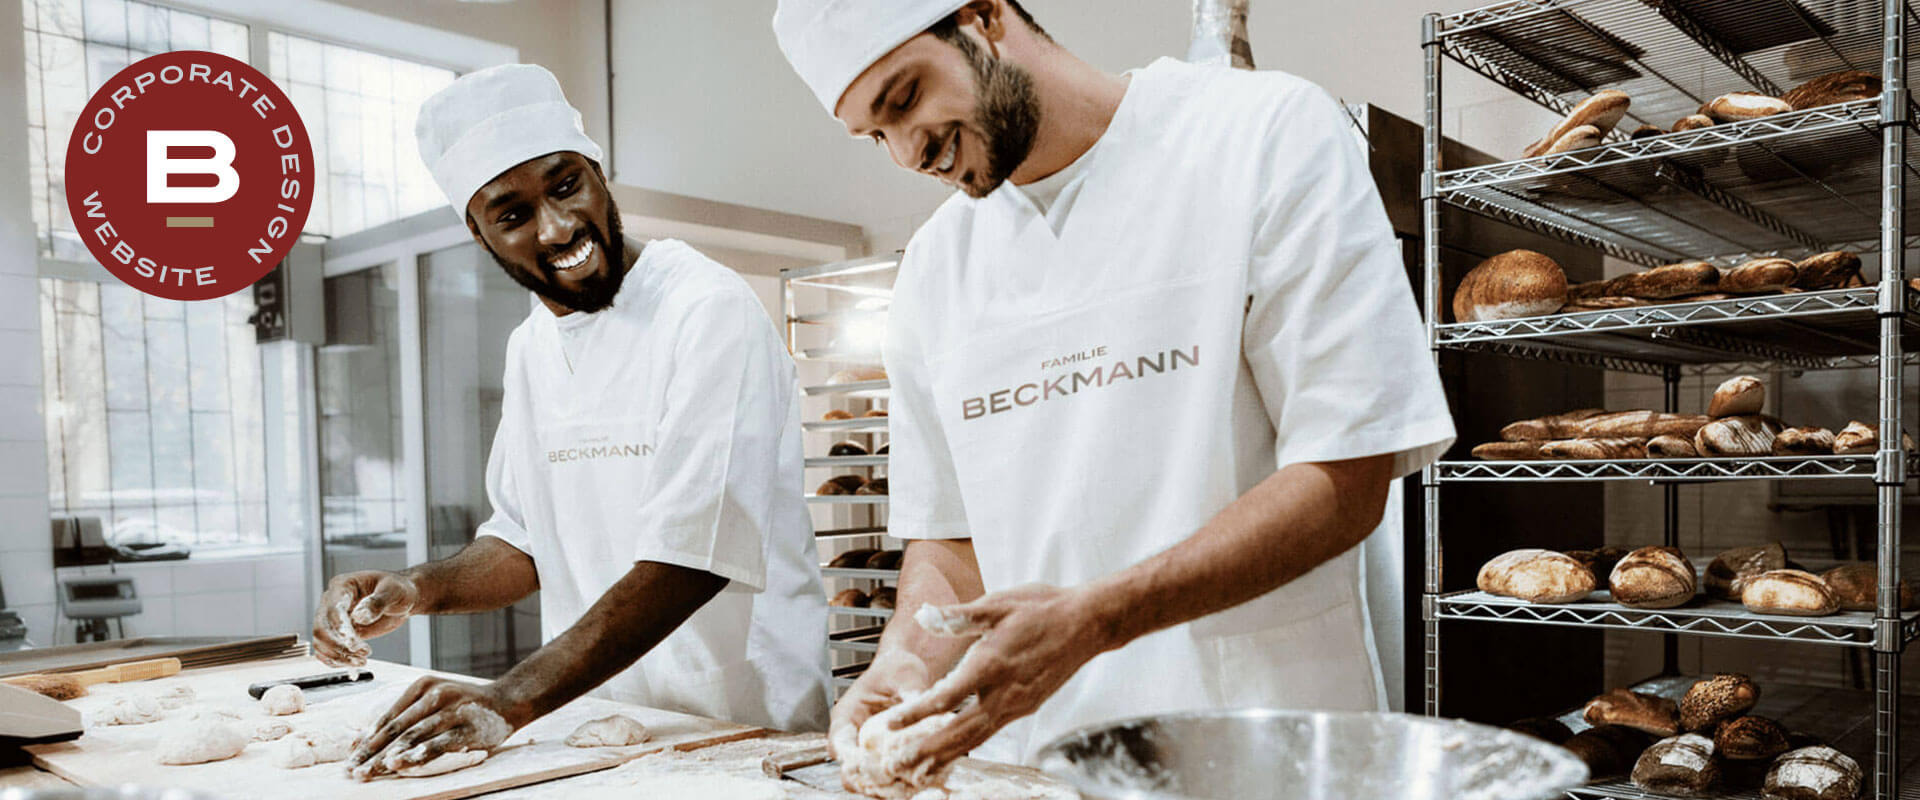 Zwei Mitarbeiter der Bäckerei Beckmanns kneten Teig in der Backstube